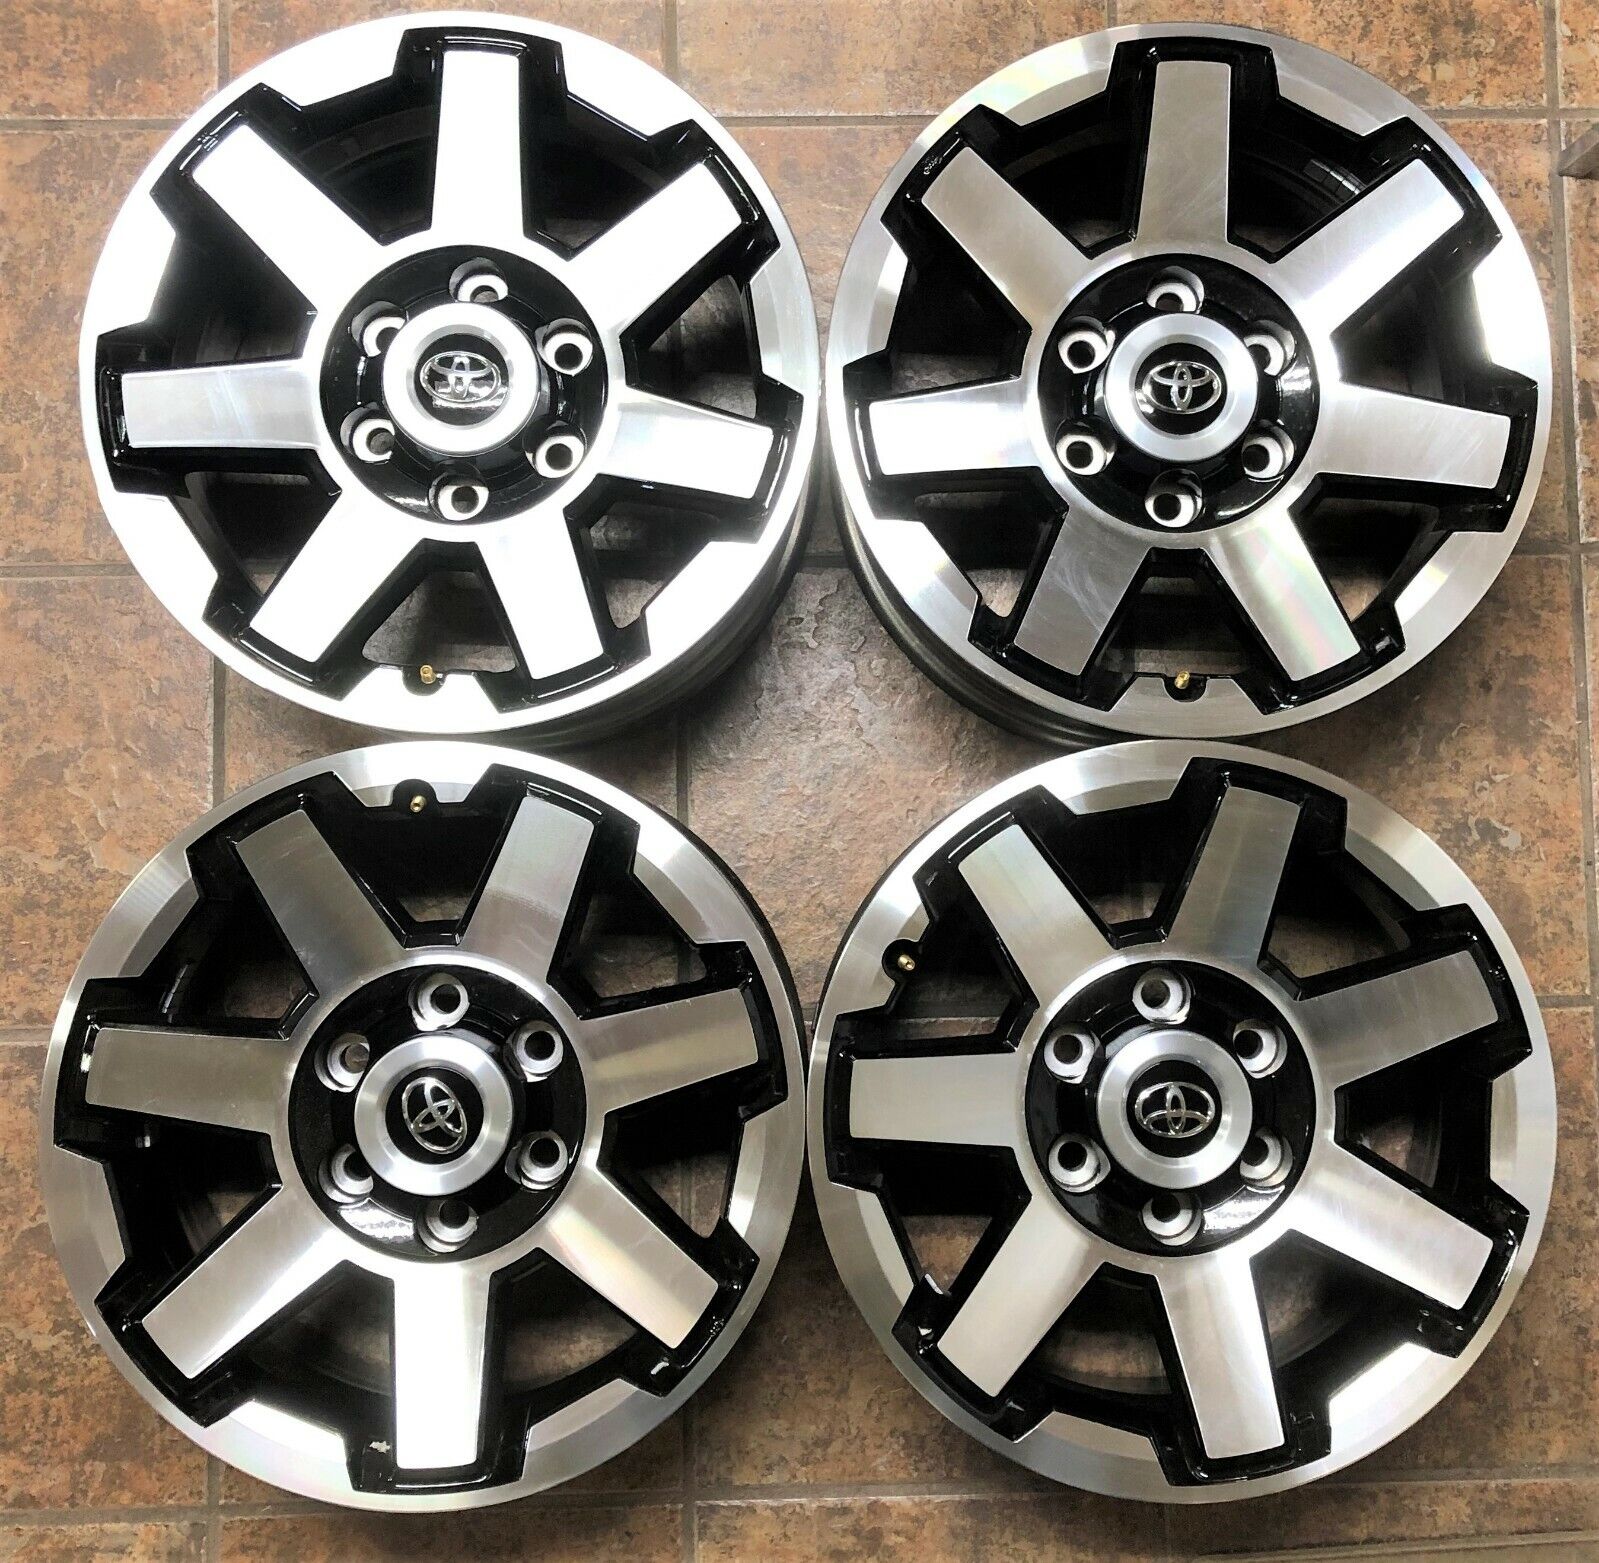  17 Inch 6 Lug Aluminum Wheel Fits FJ CRUISER, TUNDRA, TACOMA,  45157  (4Wheels)